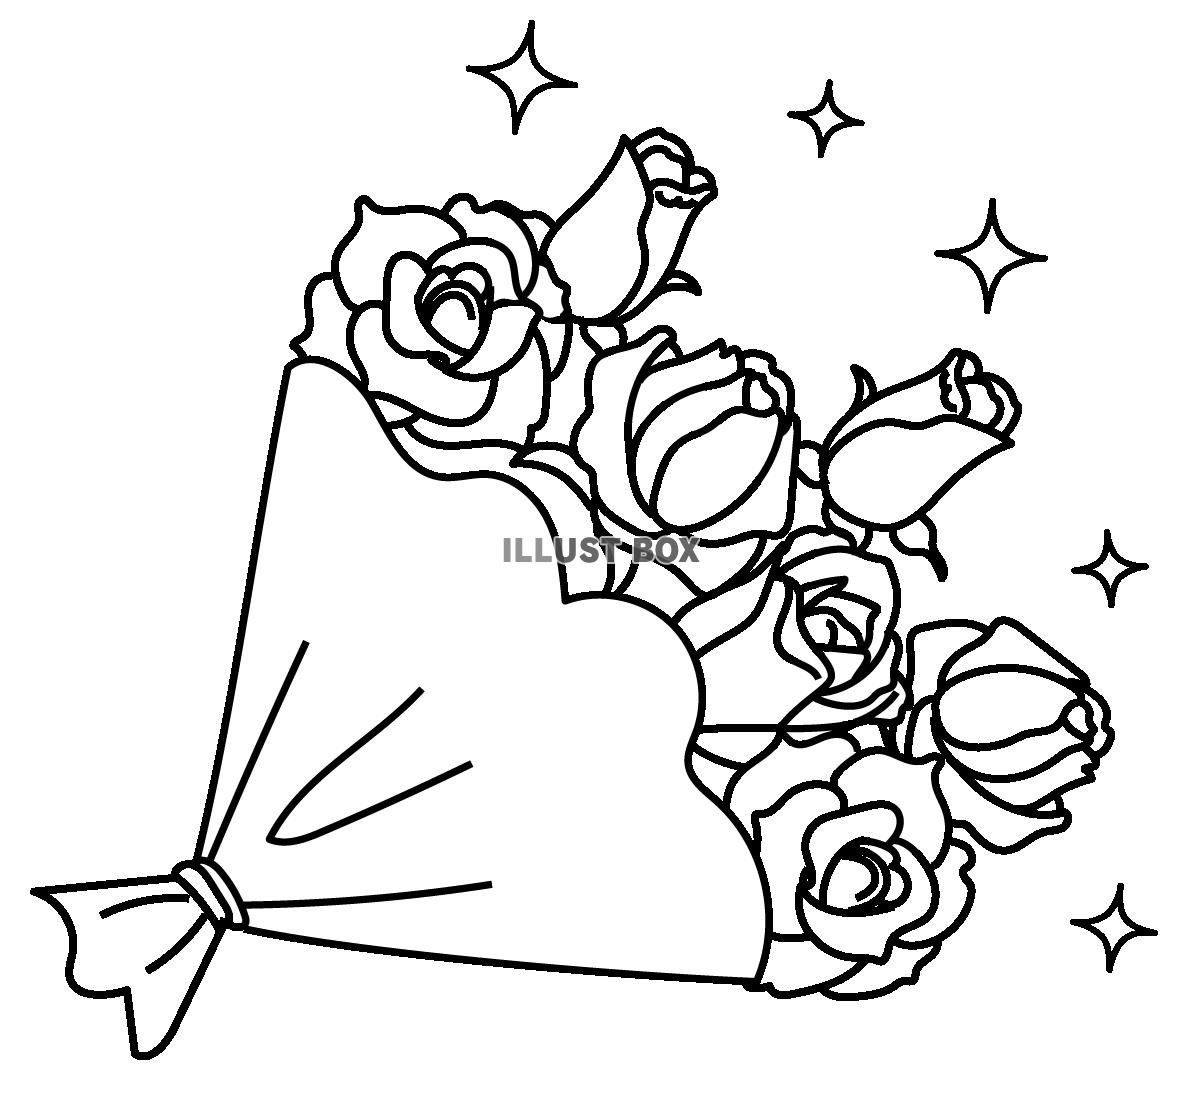 無料イラスト 透過 手書きのバラの花束のイラスト 白黒モノクロ線画